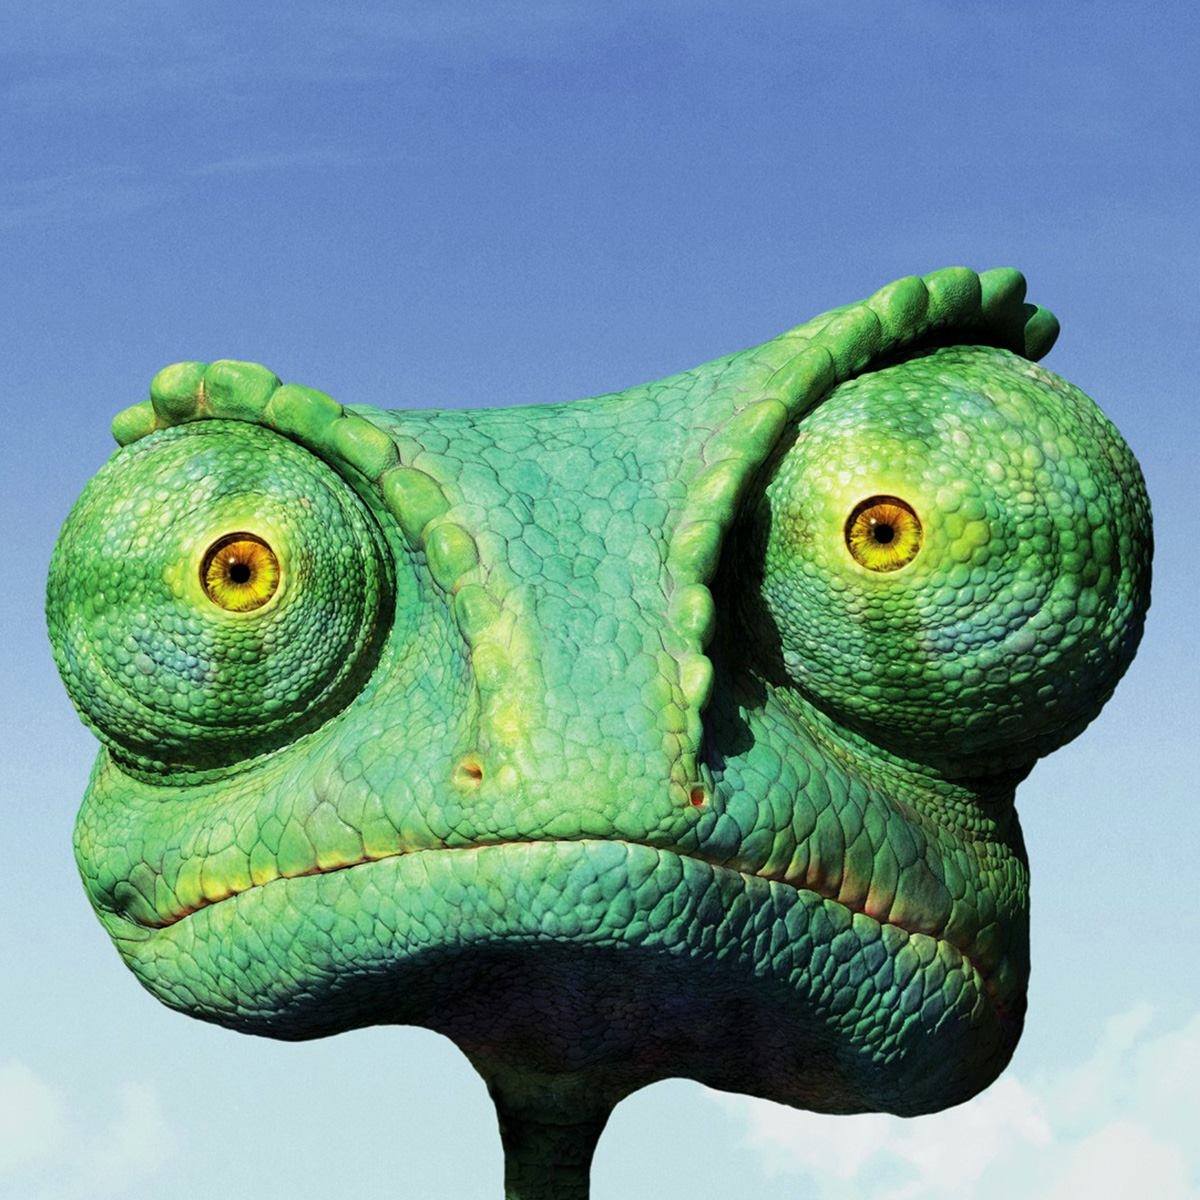 Na niebieskim tle głowa rysunkowego zielonego kameleona.